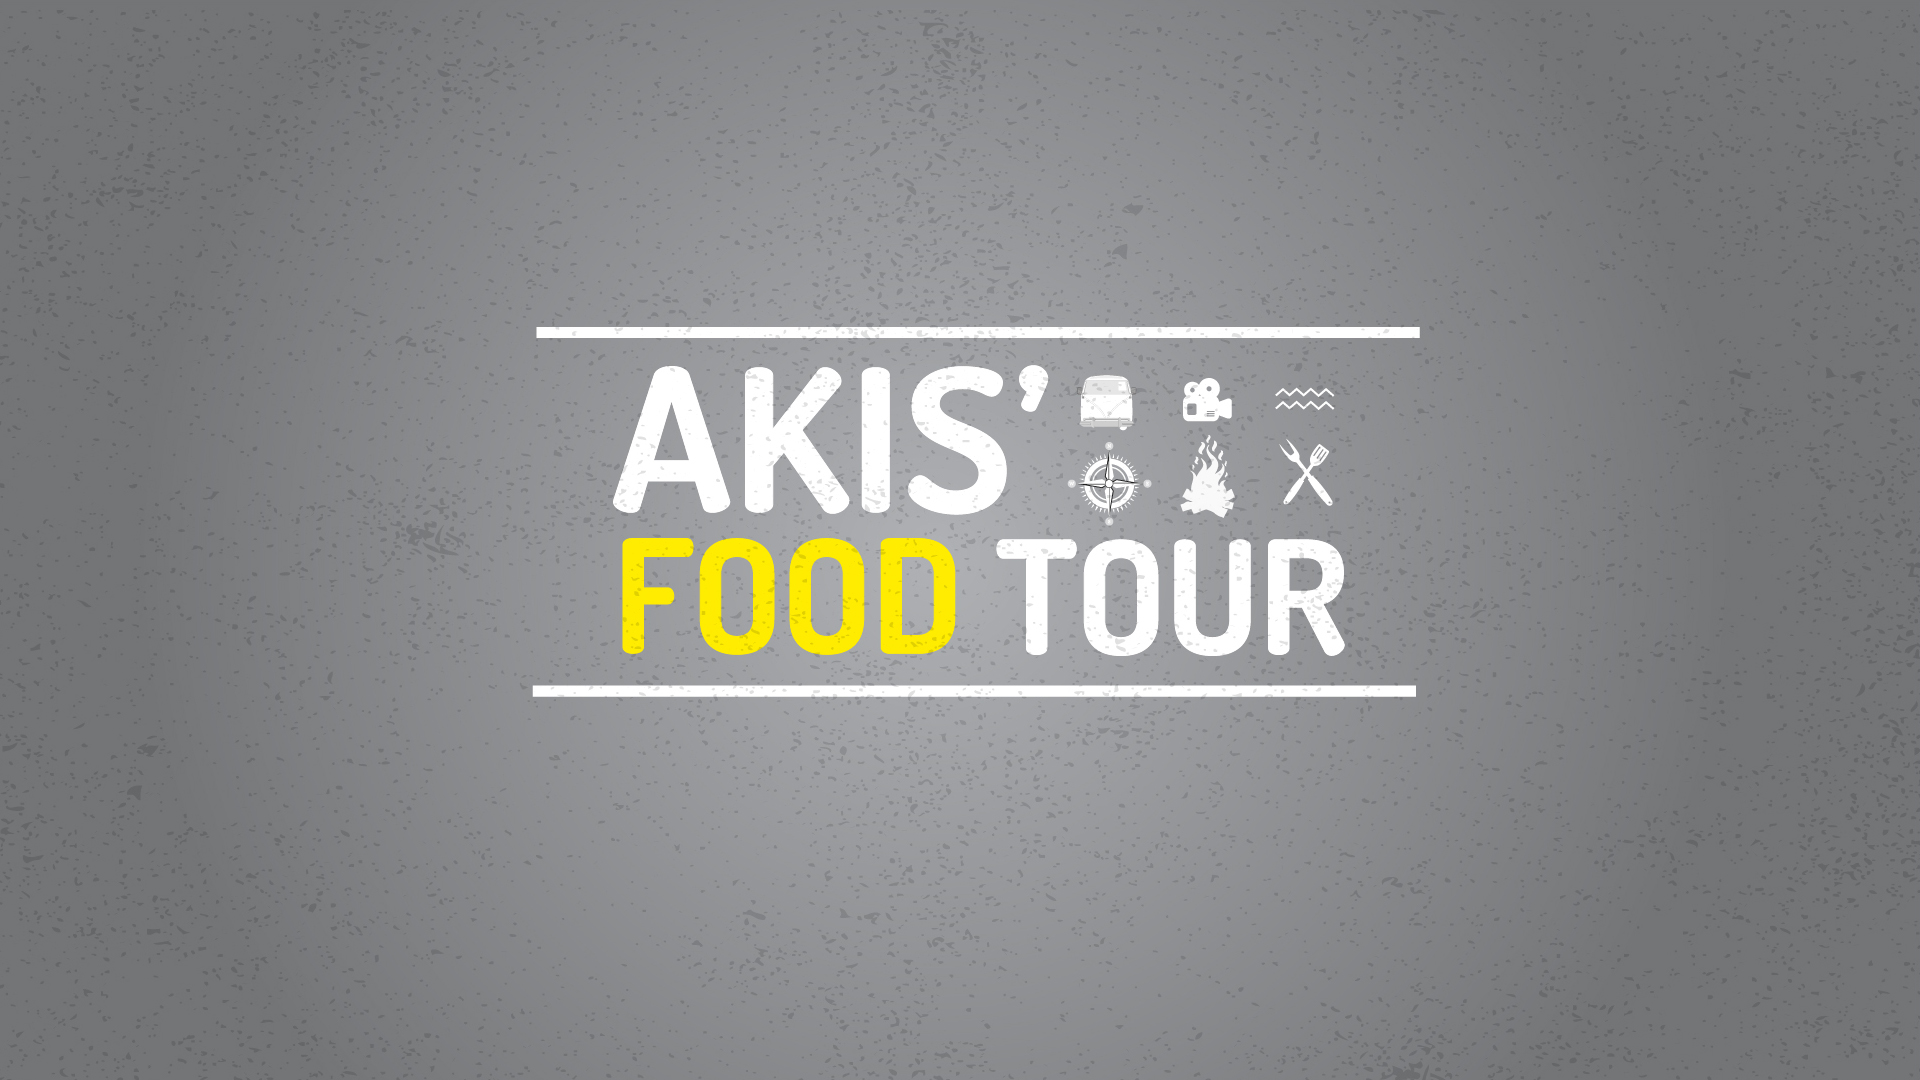 AKIS Food Tour Plain